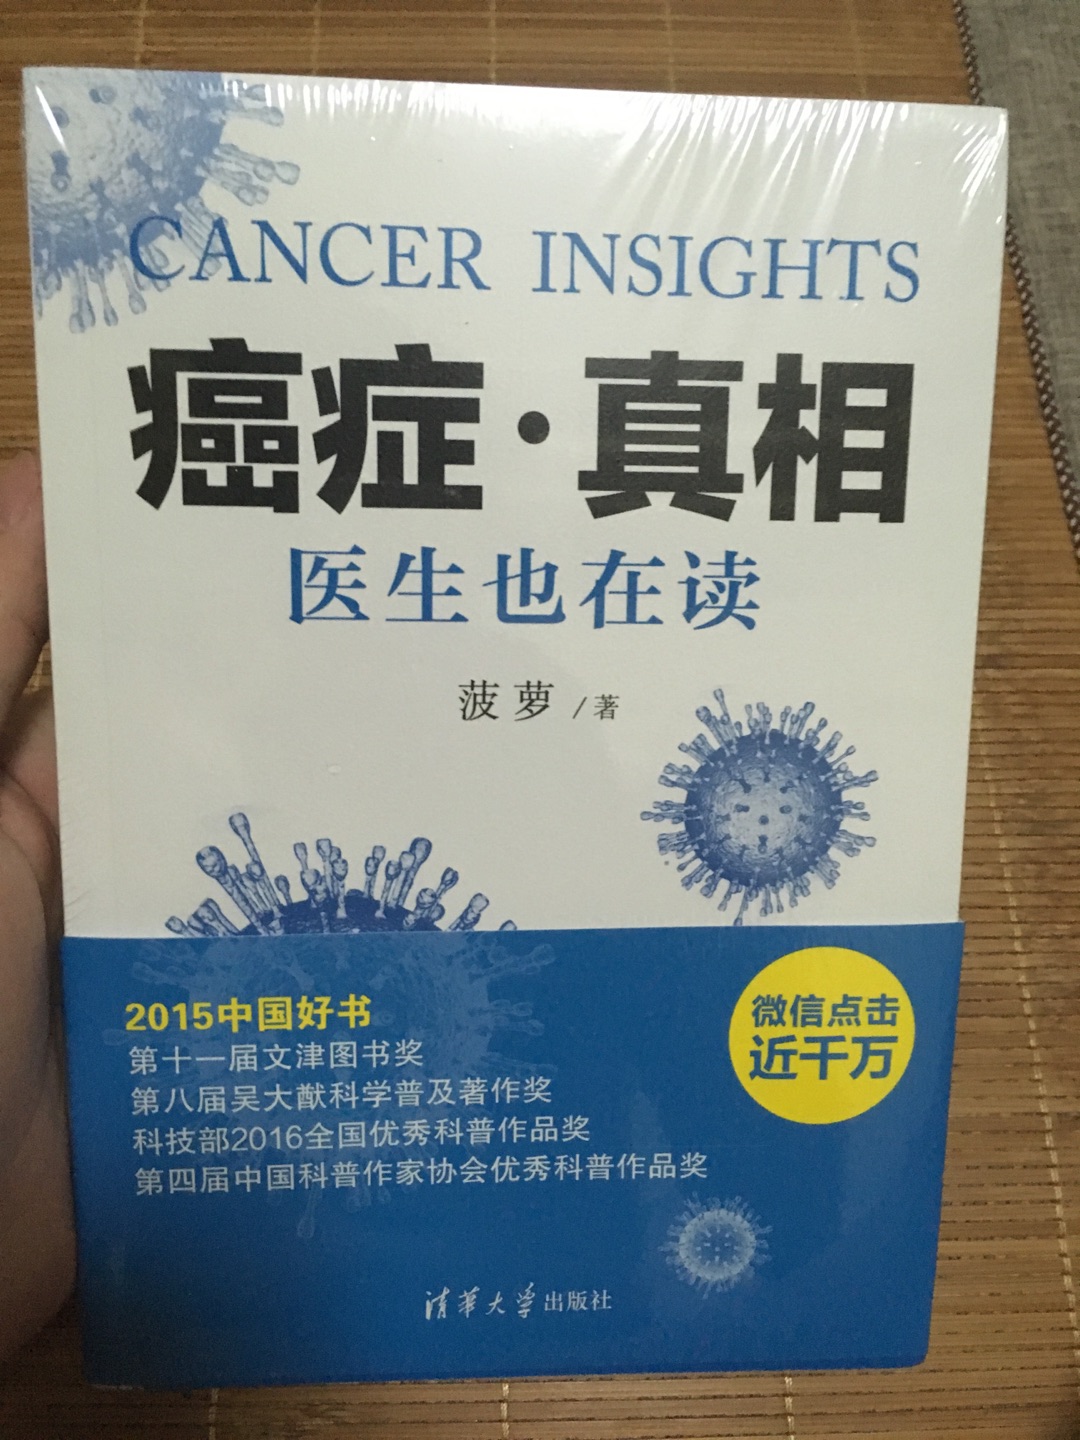 已经看过这本书了，真的能够了解很多癌症的知识。推荐这本书